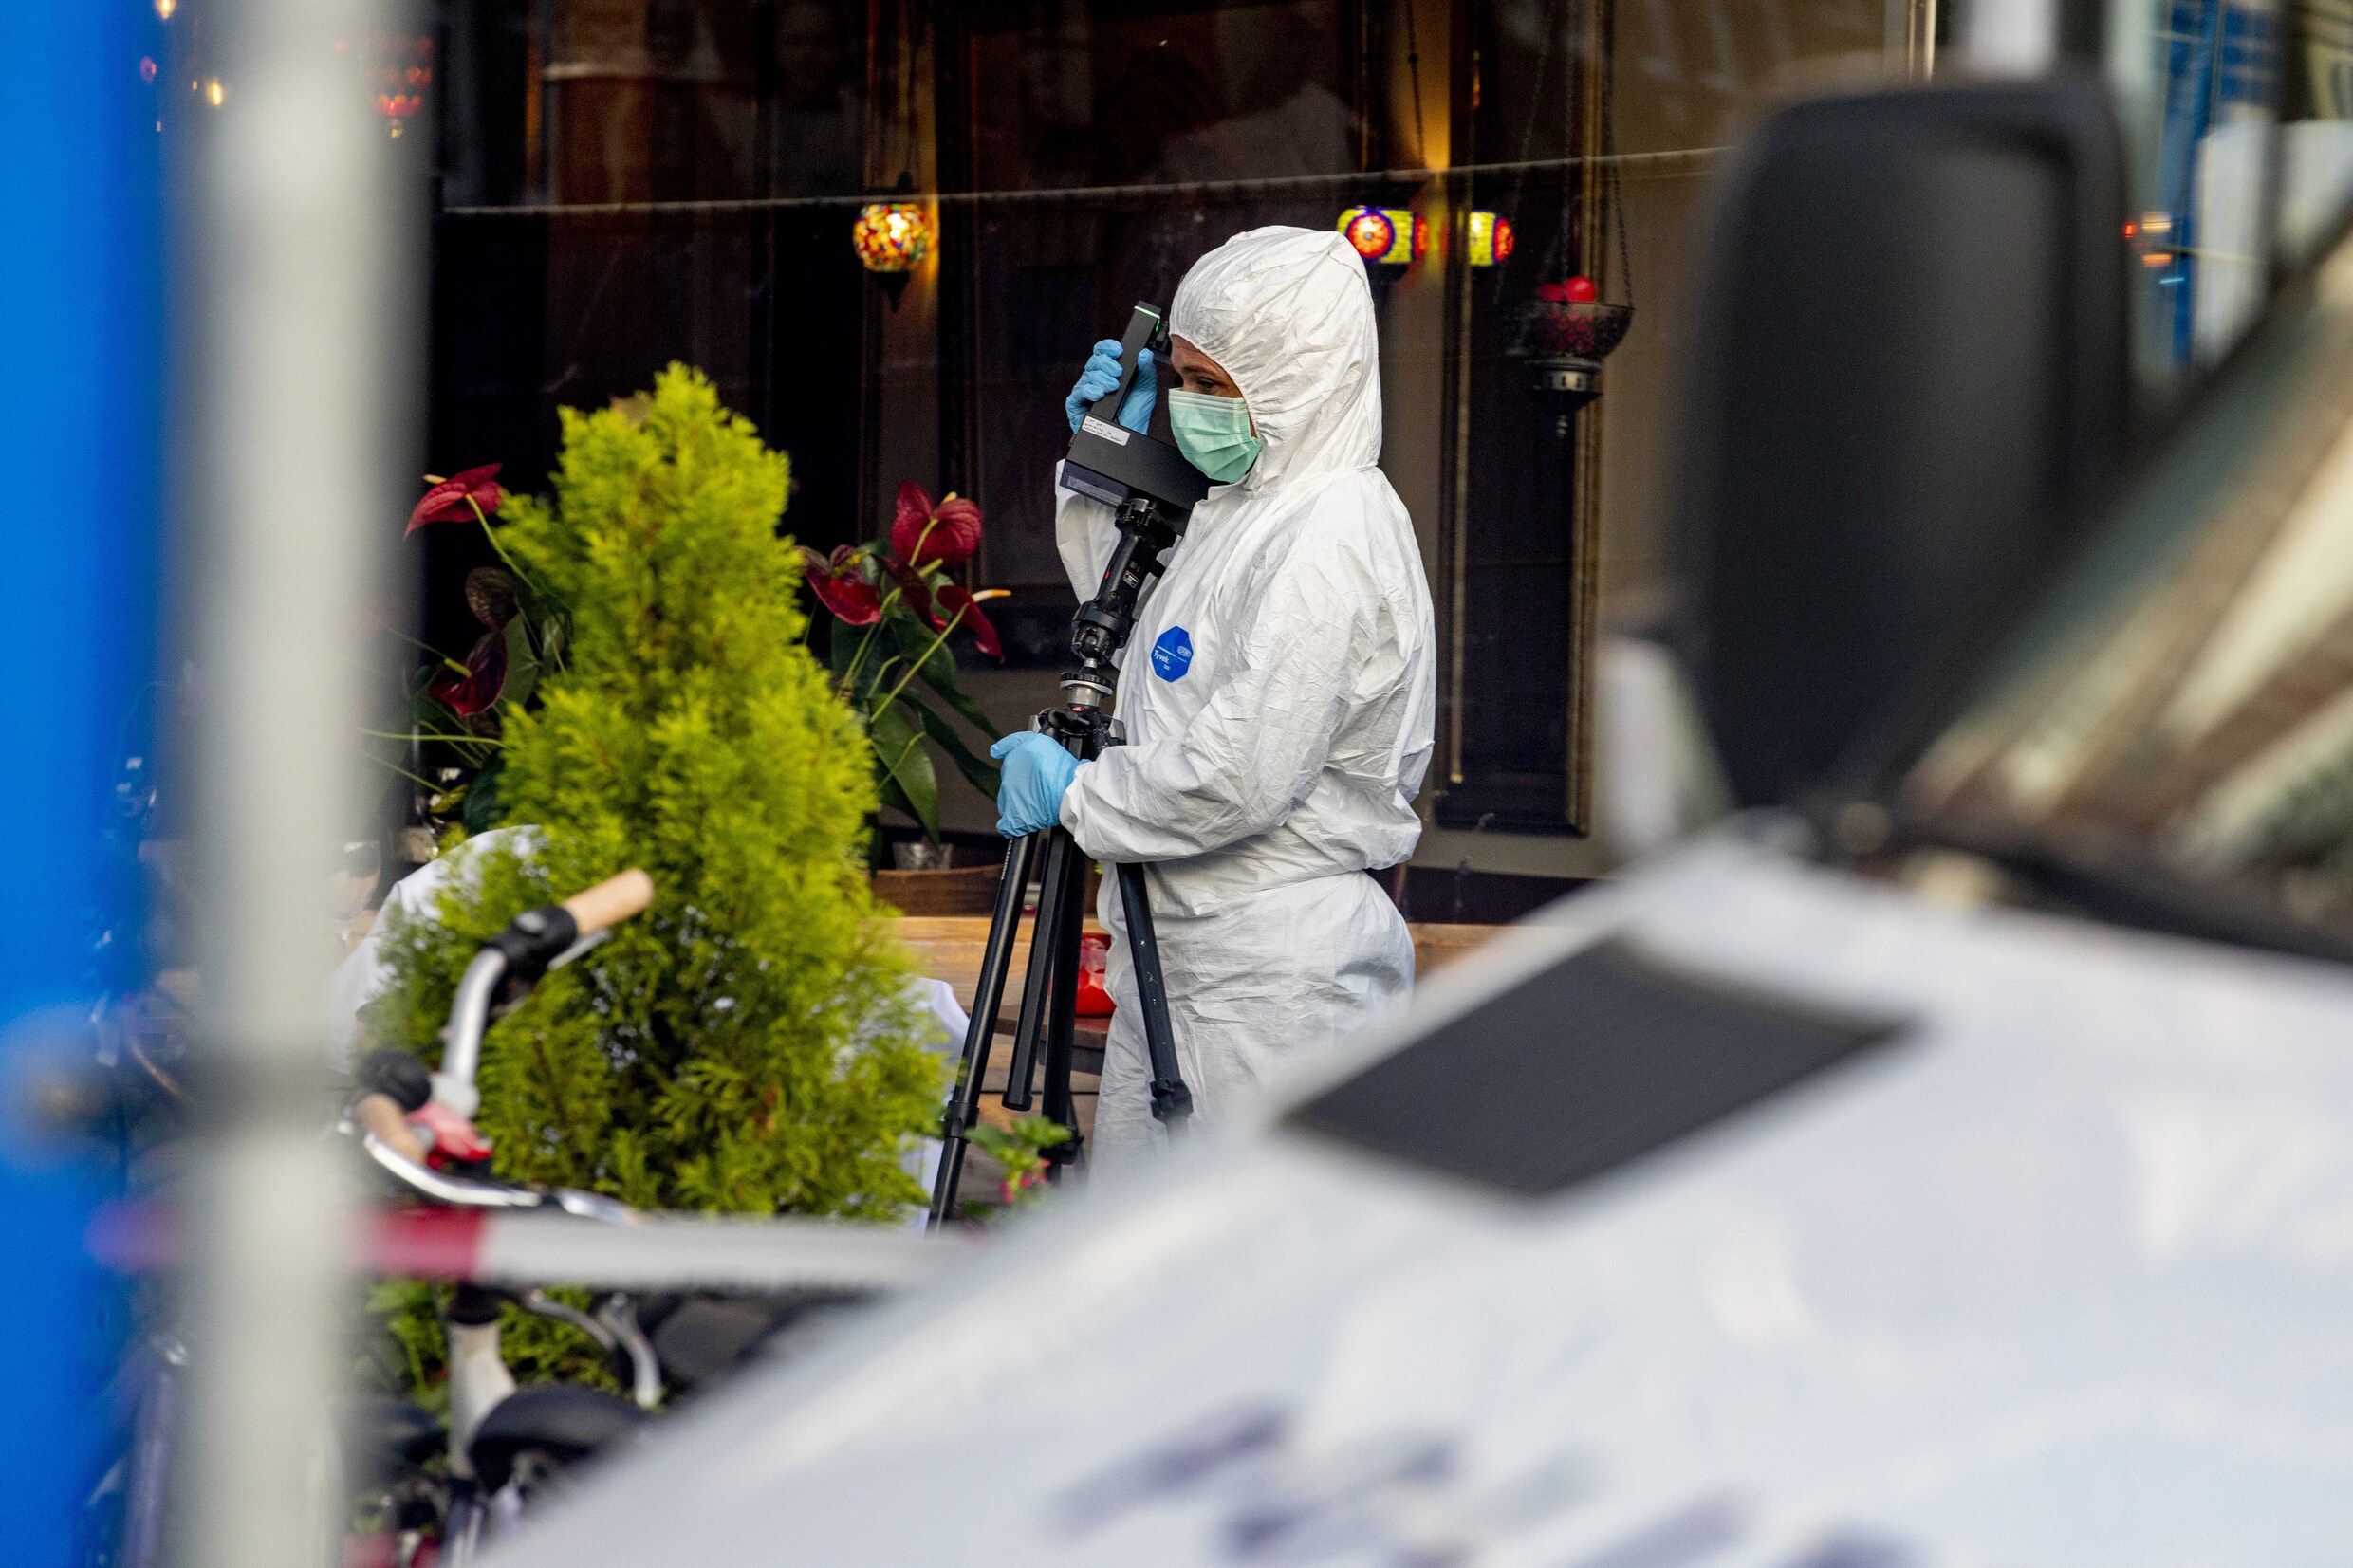 Dode en zwaargewonde bij schietpartij in Amsterdam: 1 verdachte aangehouden, mogelijk nog verdachte voortvluchtig